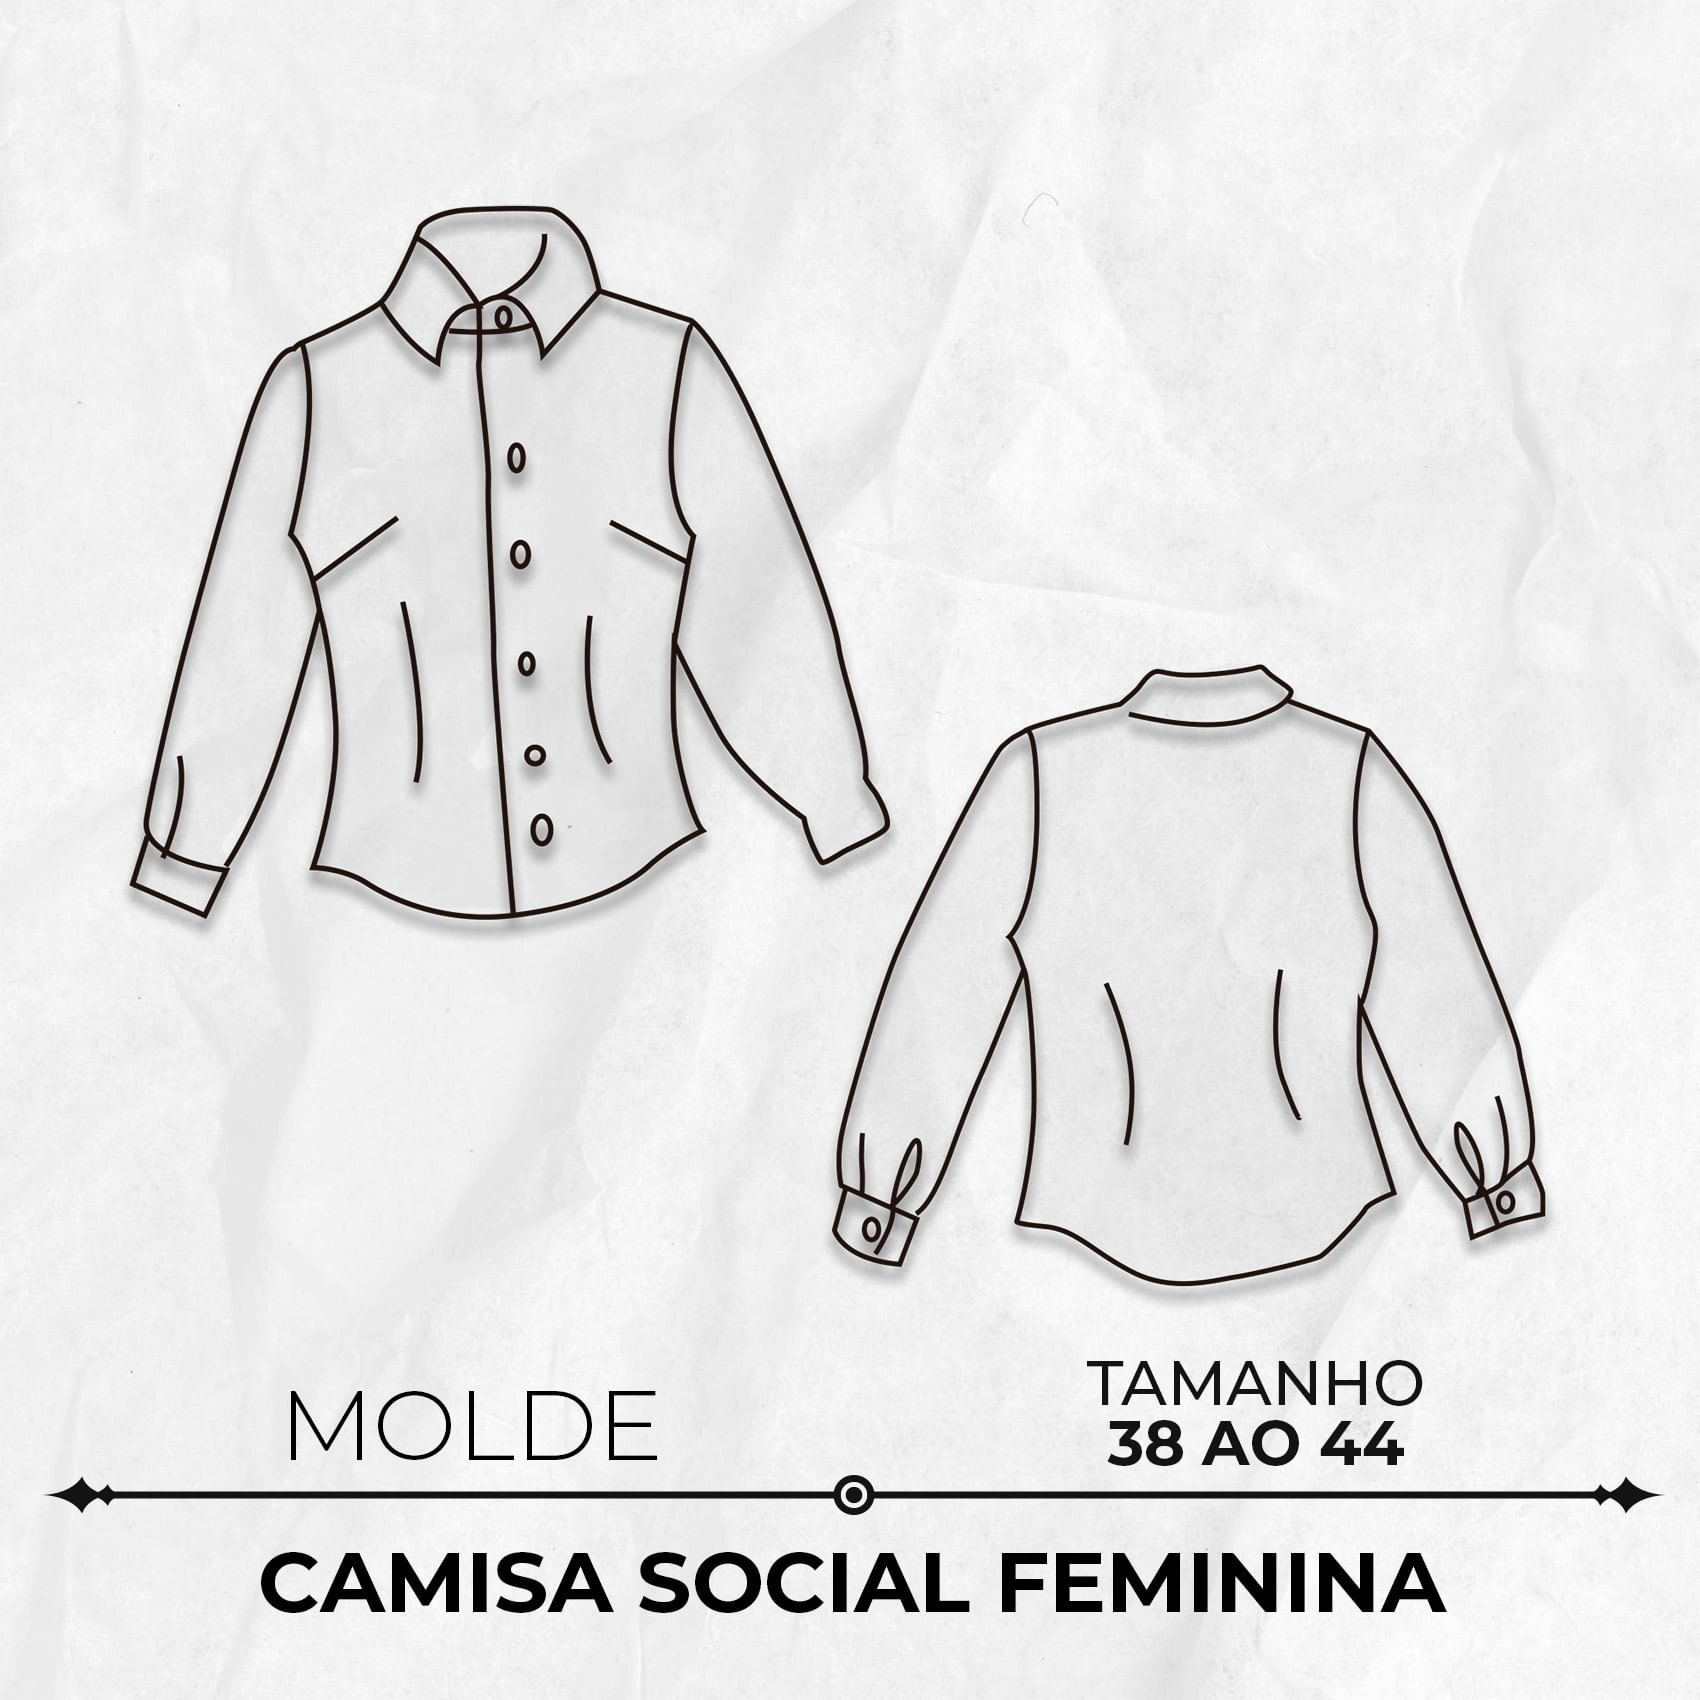 Molde-camisa-social-feminina-tamanho-38-ao-44-by-Marlene-Mukai-13340-1